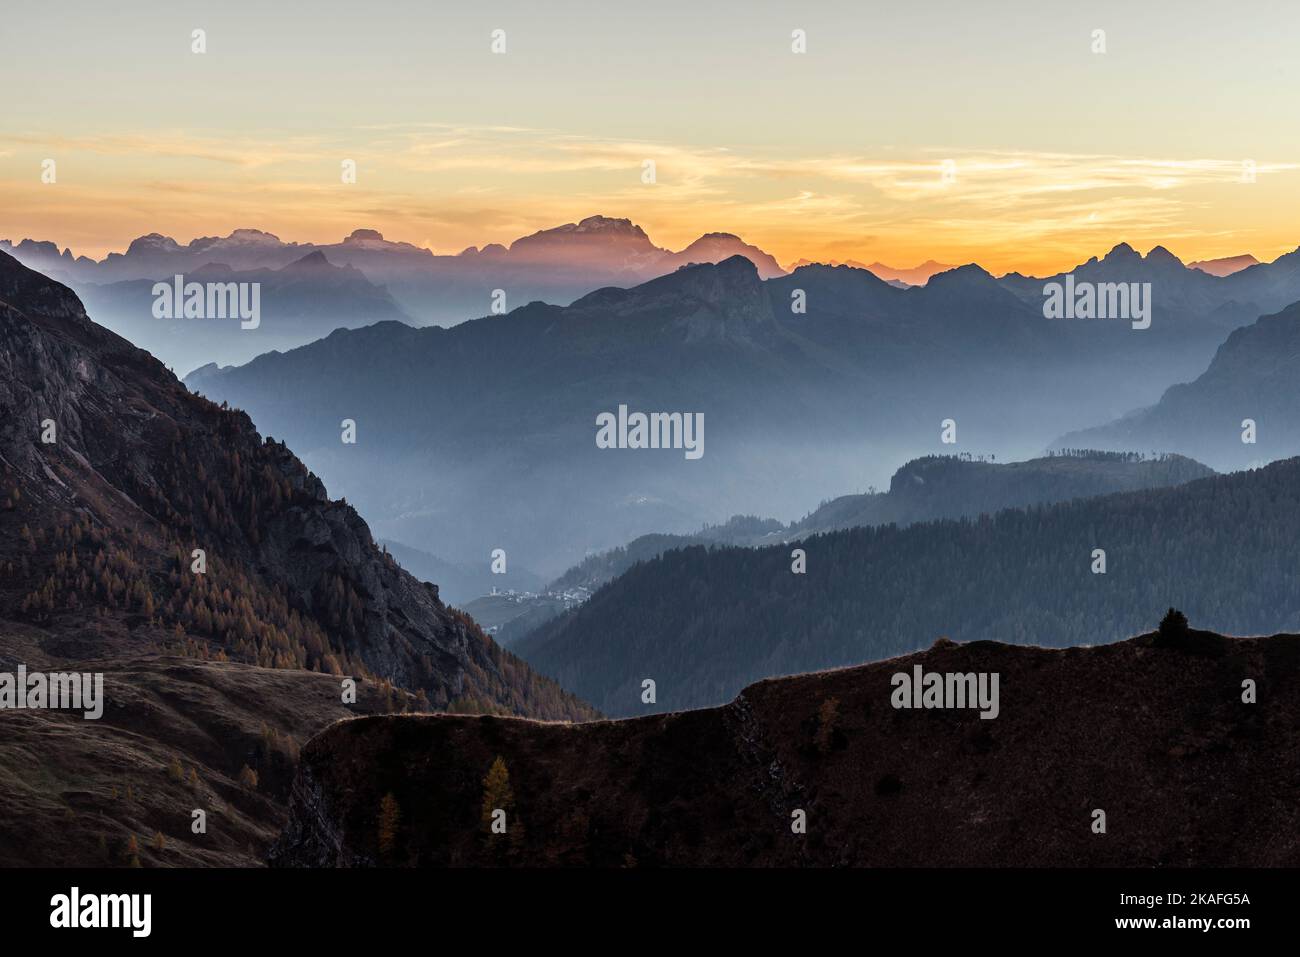 Dämmerung über der herbstlichen Landschaft mit Tälern und Bergketten der Civetta Gruppe und Ampezzo Dolomiten, Passo di Giau, Dolomiten, Italien Stockfoto